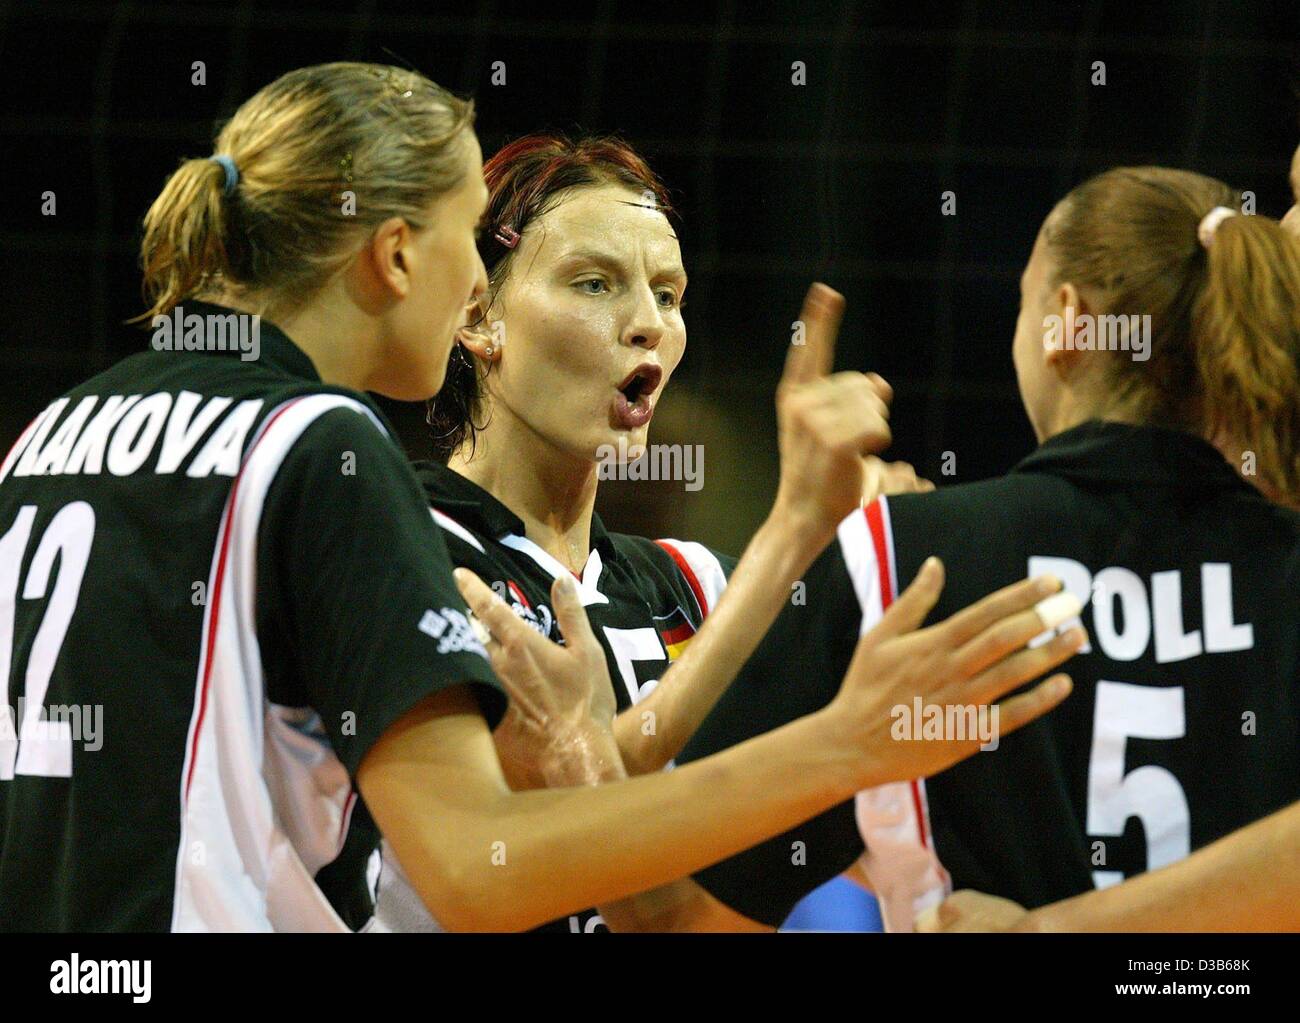 (Dpa) - der deutsche Spieler Angelina Gruen (C) diskutiert mit ihren Teamkollegen Olessya Kulakova (L) und Sylvia Roll während ihres Spiels gegen Italien bei der Frauen-Volleyball-WM in Münster, 2. September 2002. Deutschland verlor 0: 3. Diese zweite Niederlage nach der 0: 3 gegen Bulgarien die Ge brachte Stockfoto